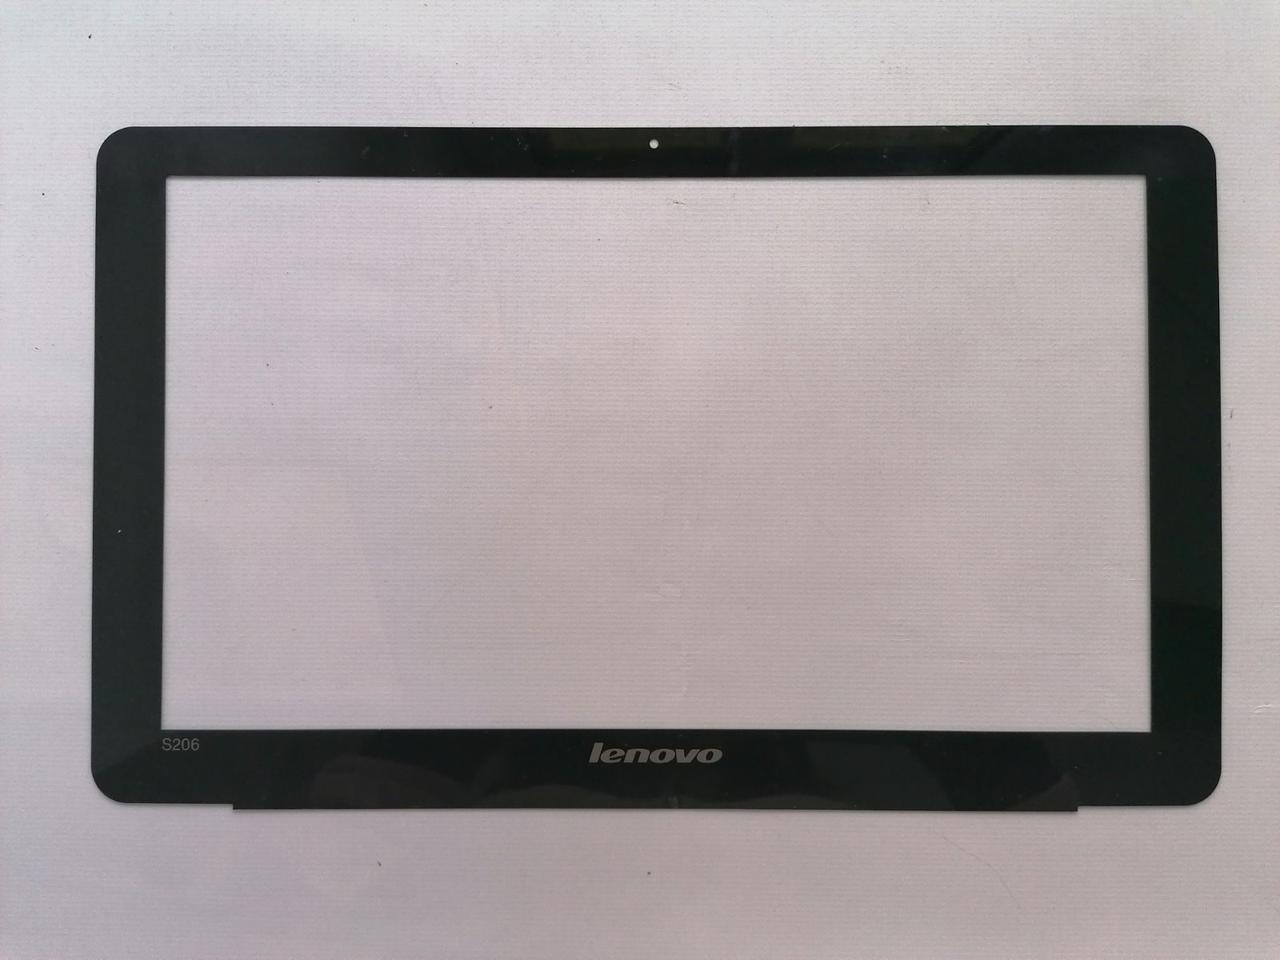 Б/У корпус рамка матриці для нетбука Lenovo IdeaPad S206